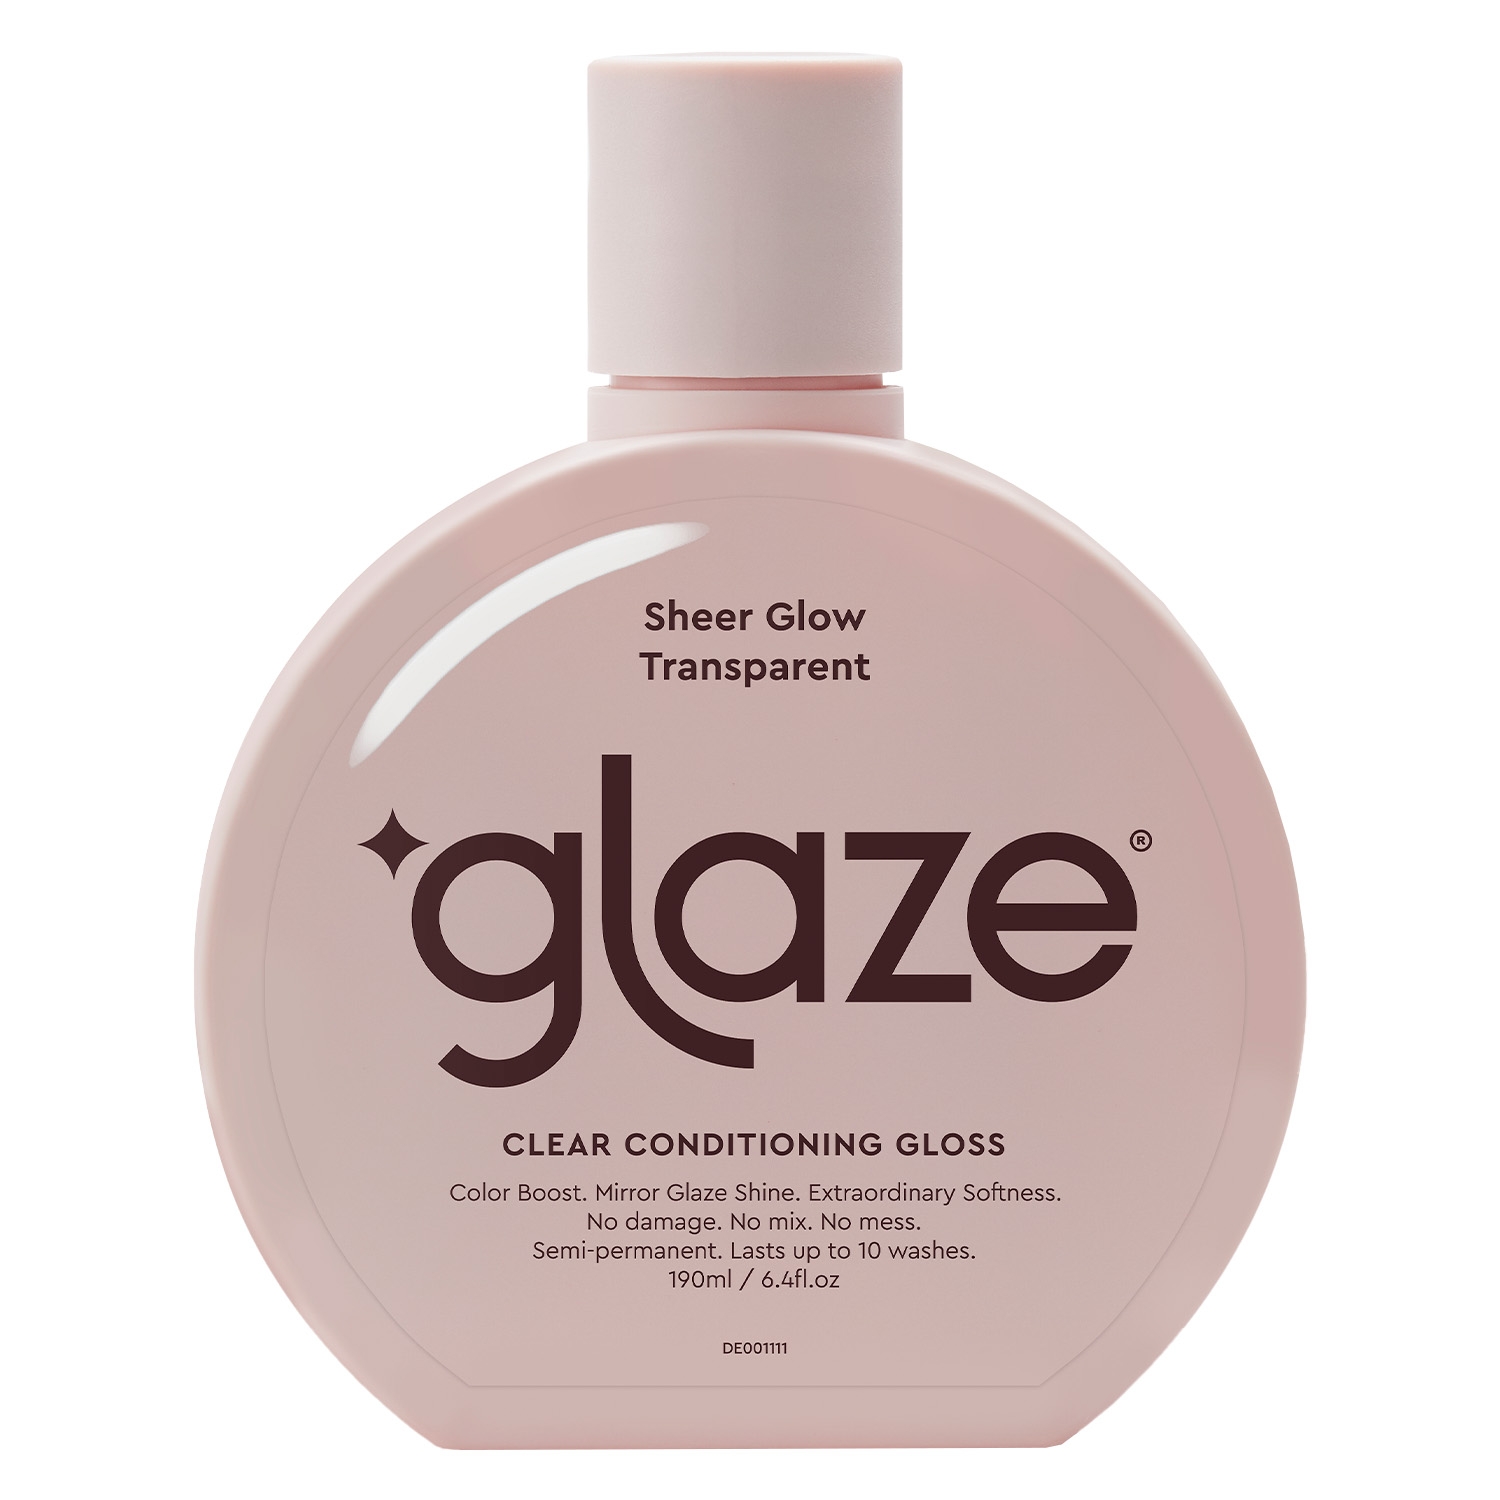 Produktbild von Glaze - Color Conditioning Gloss Sheer Glow